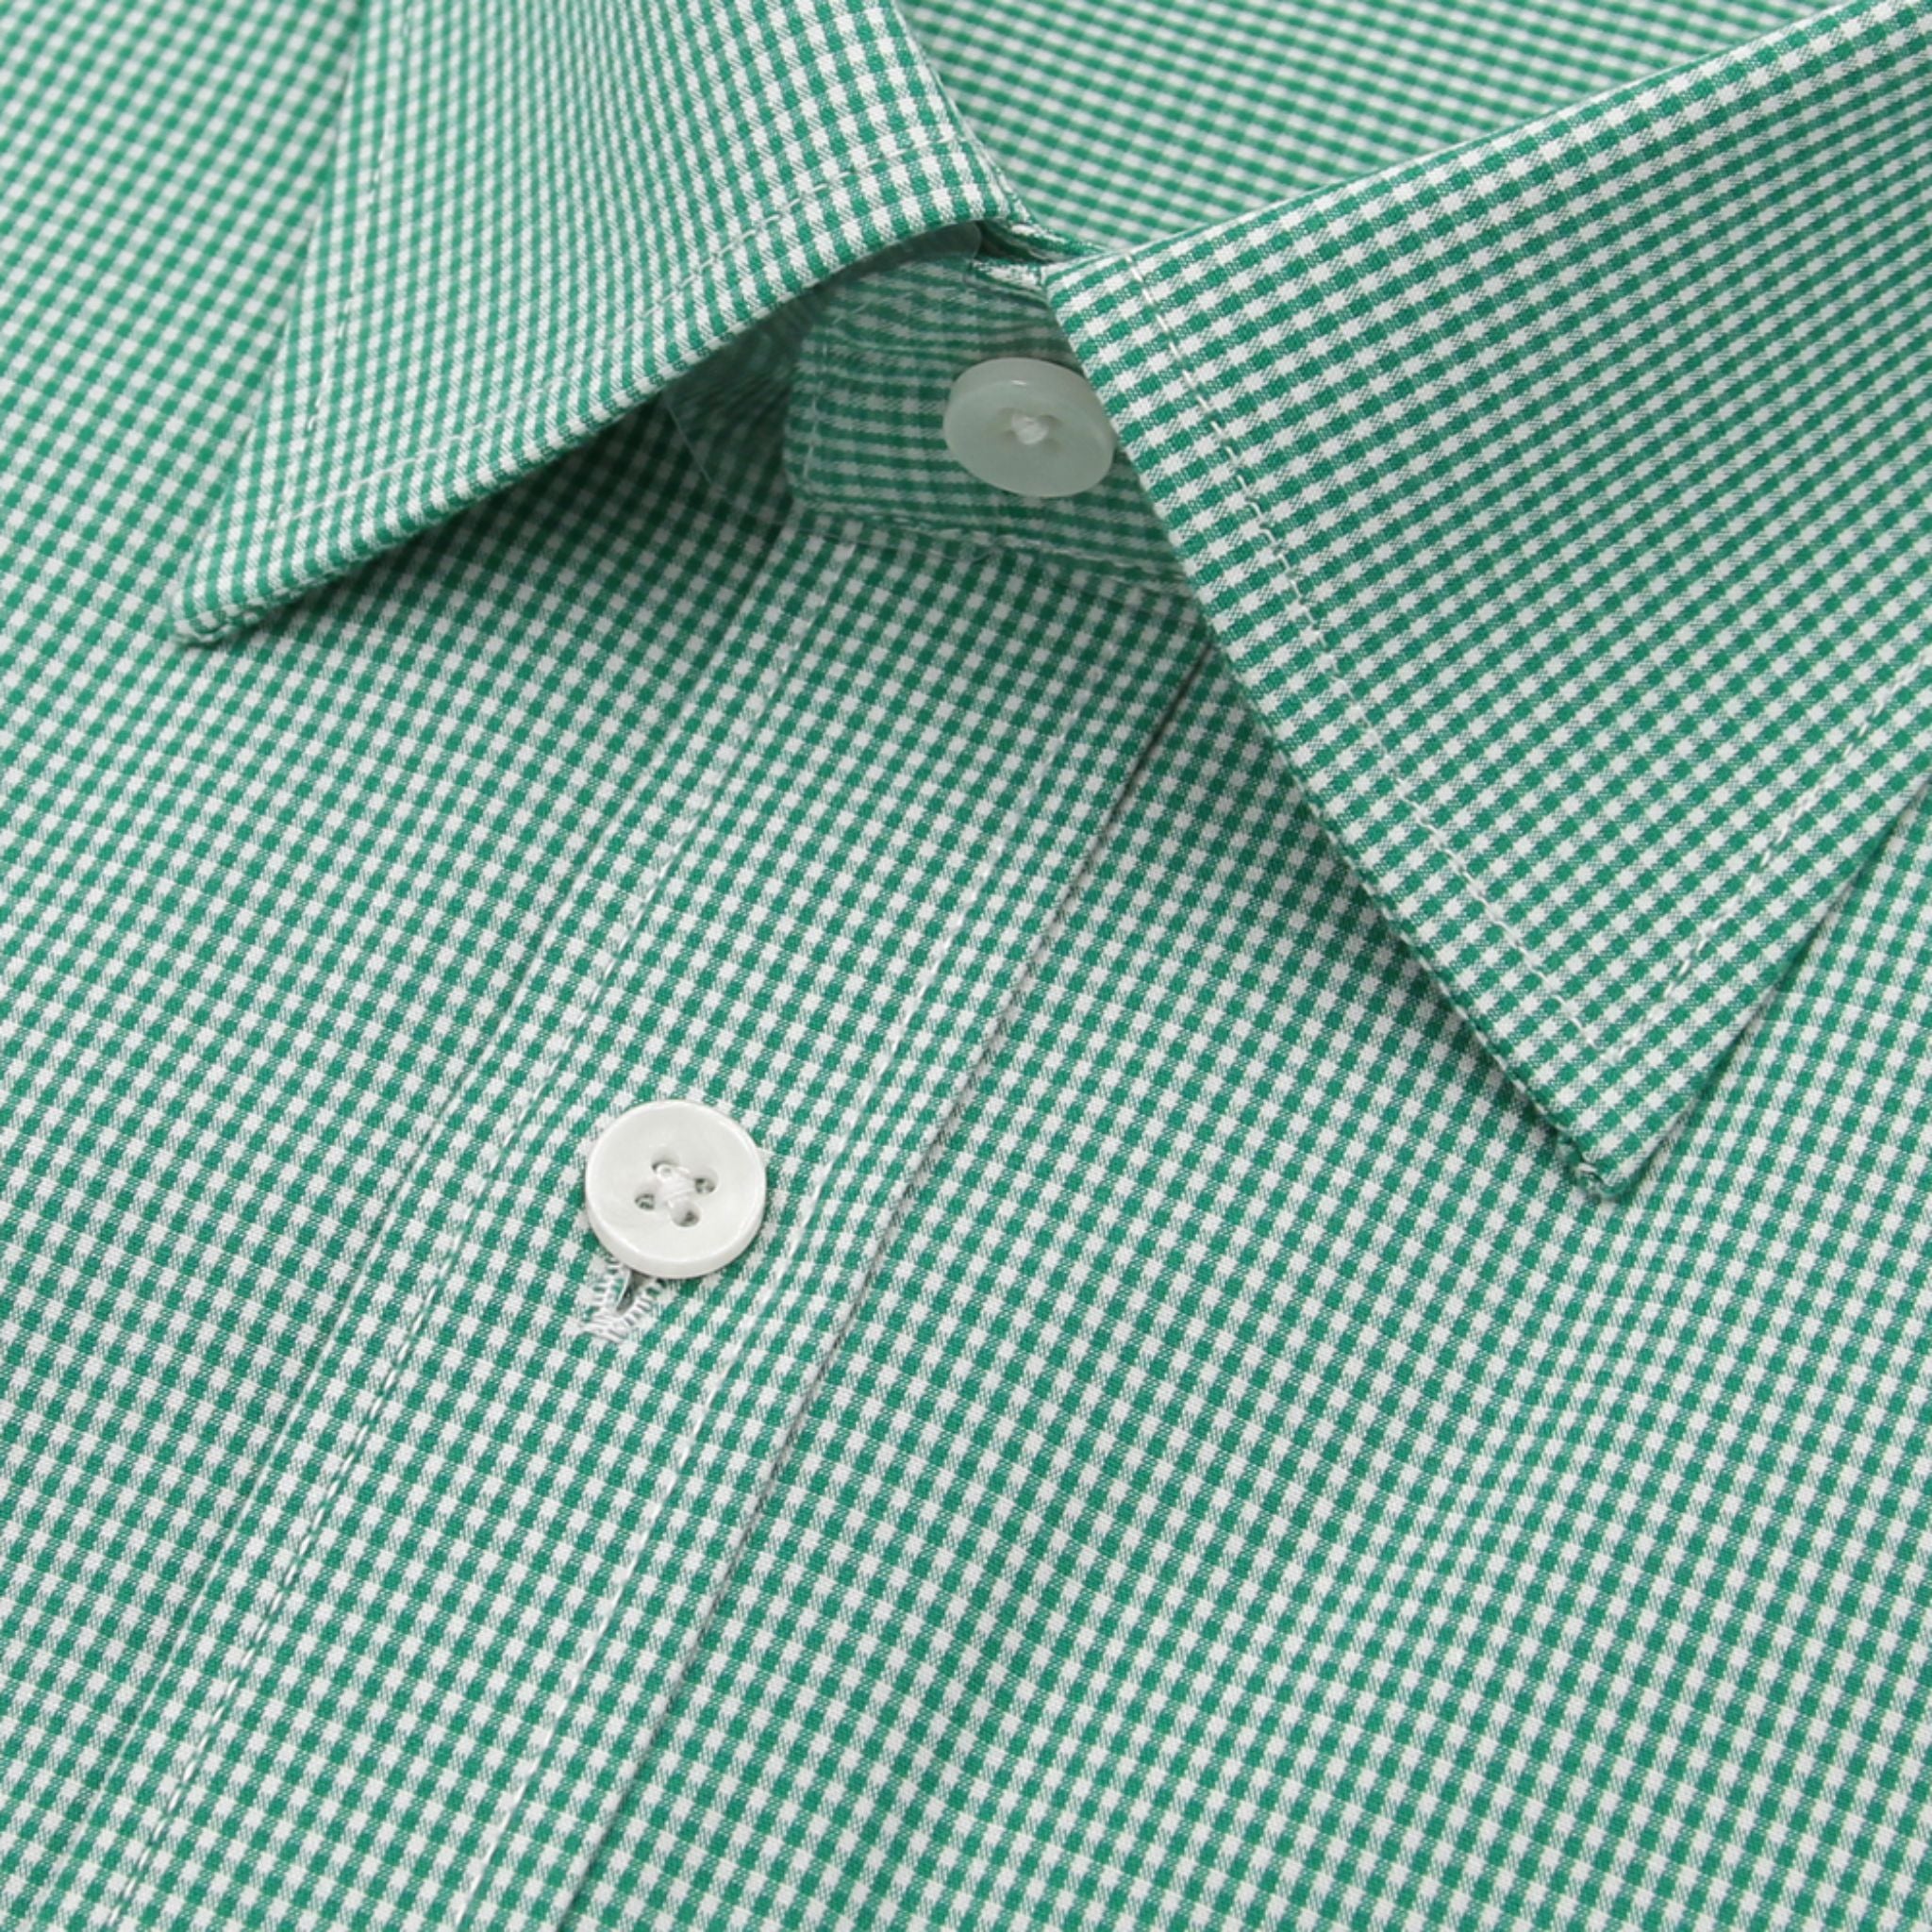 Van Heusen Short-Sleeved Compact Cotton Shirt - Green